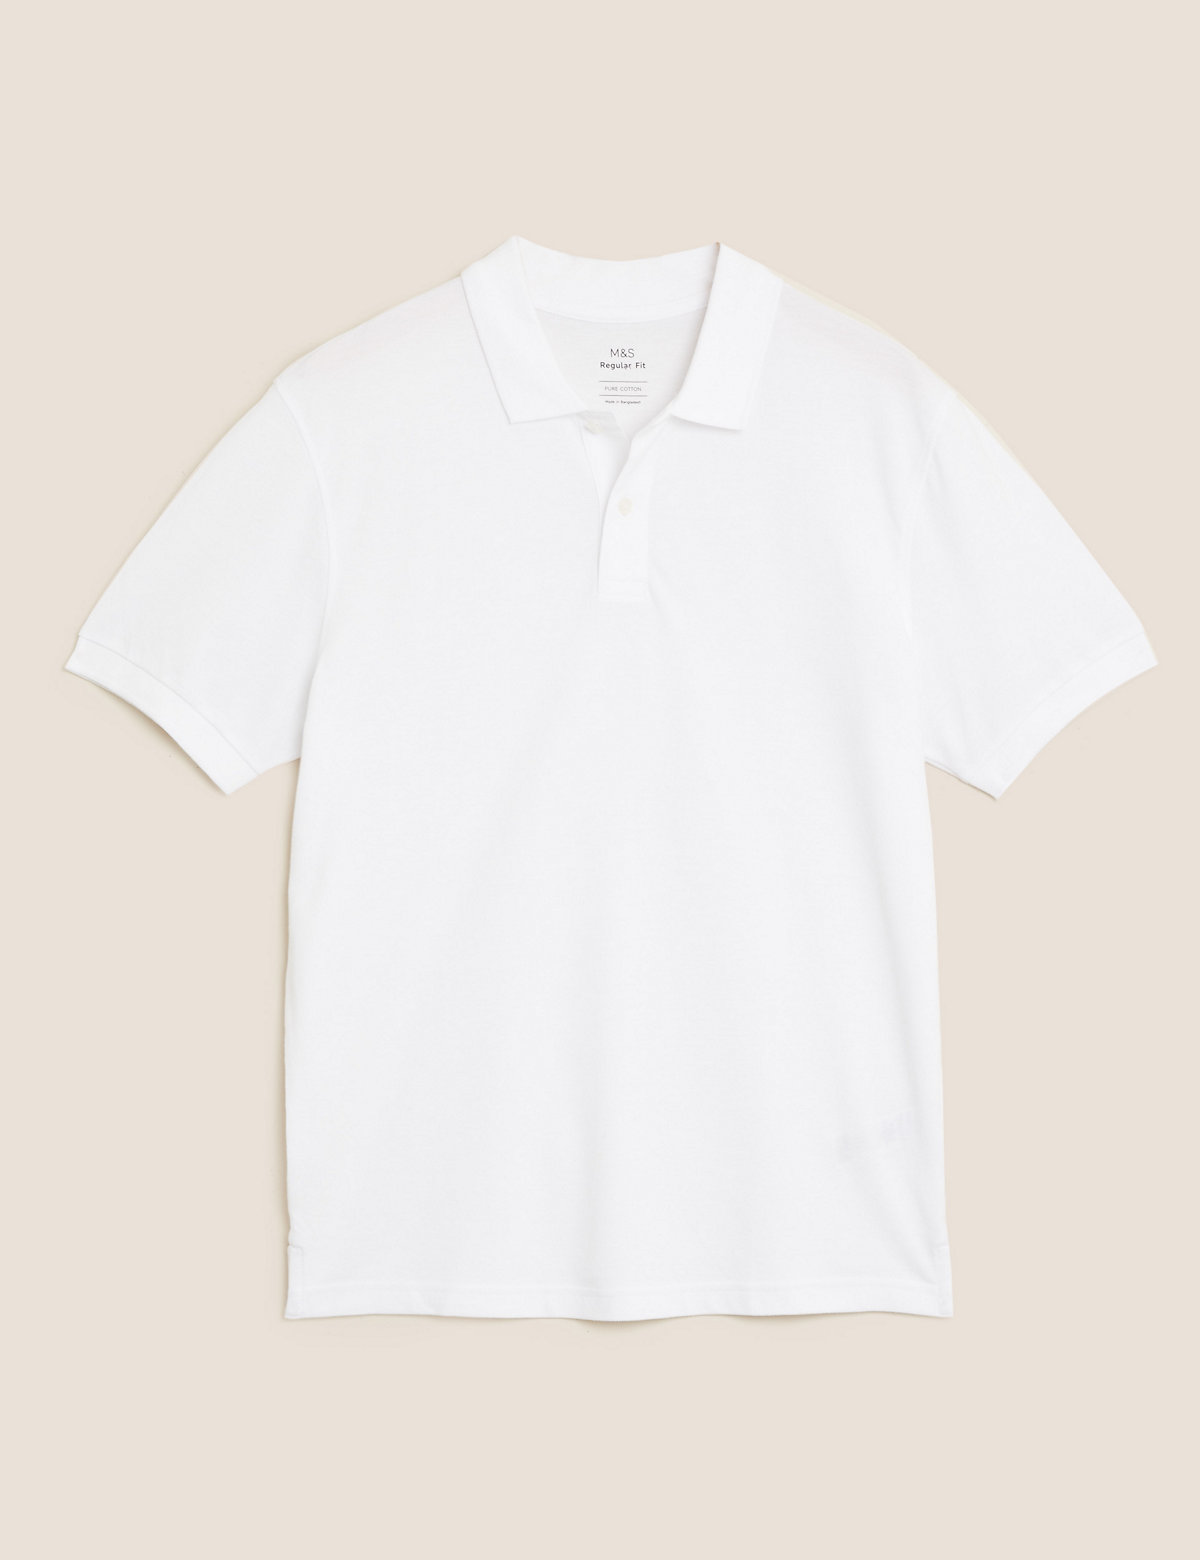 Pure Cotton Pique Polo Shirt